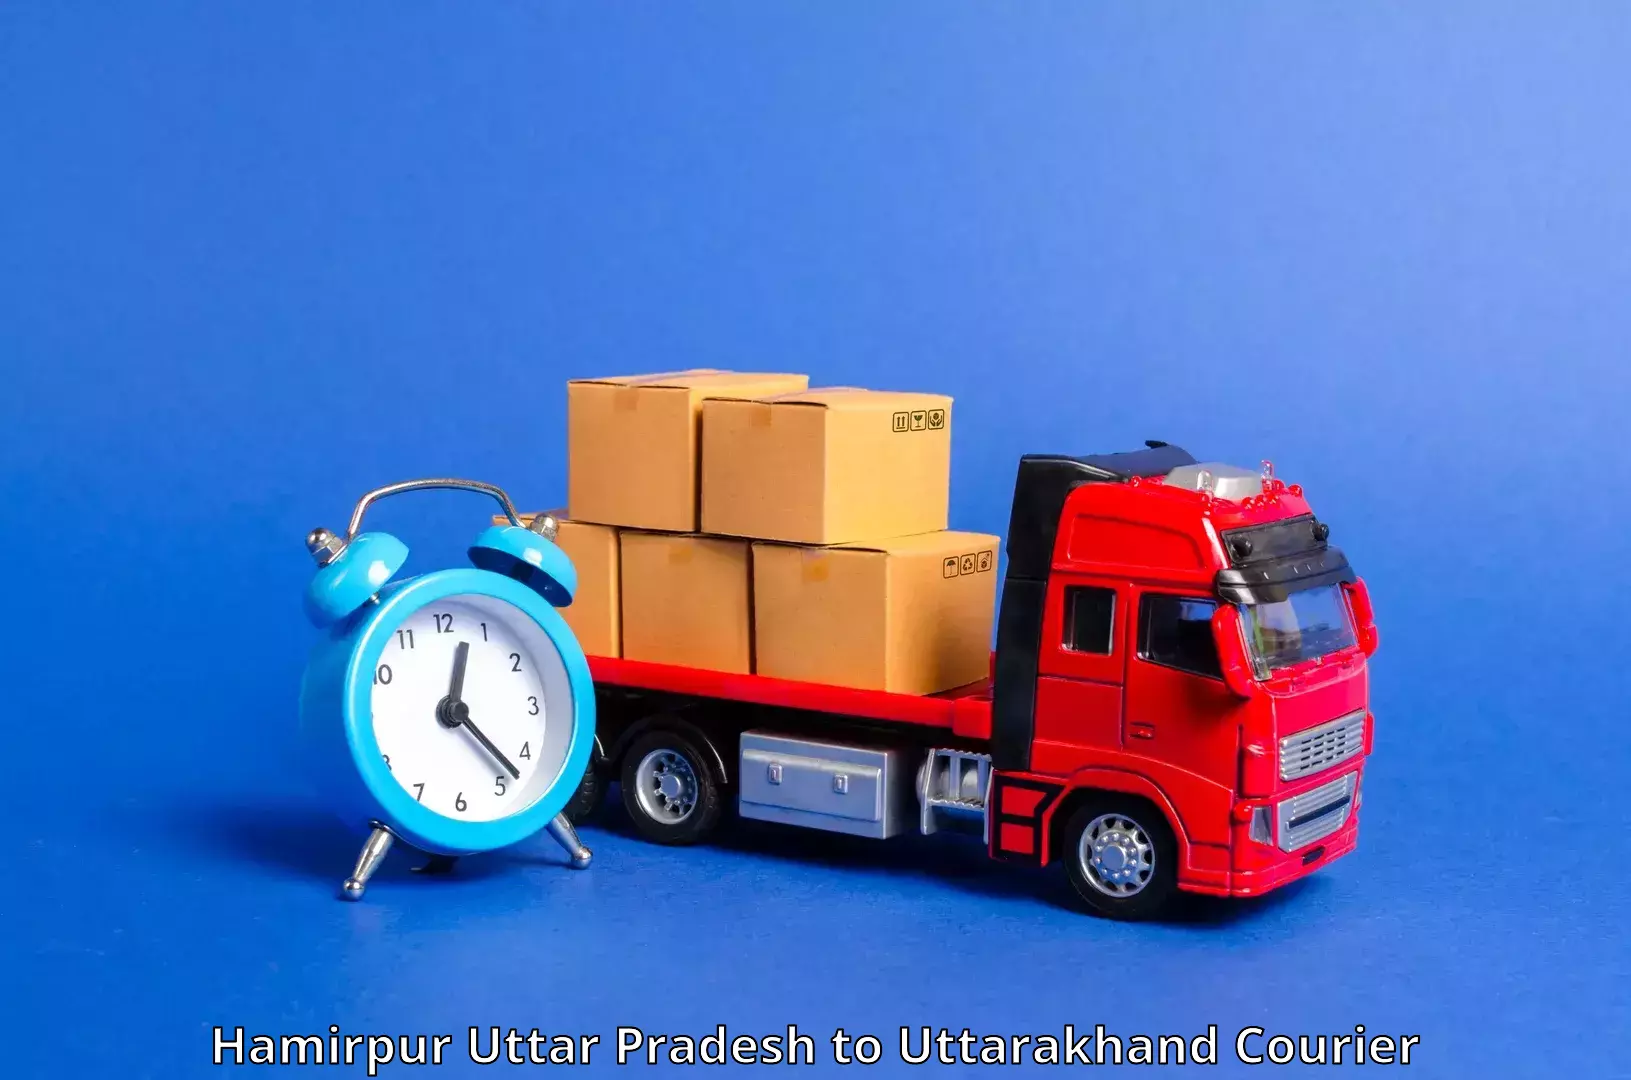 Personal courier services in Hamirpur Uttar Pradesh to Kotdwara